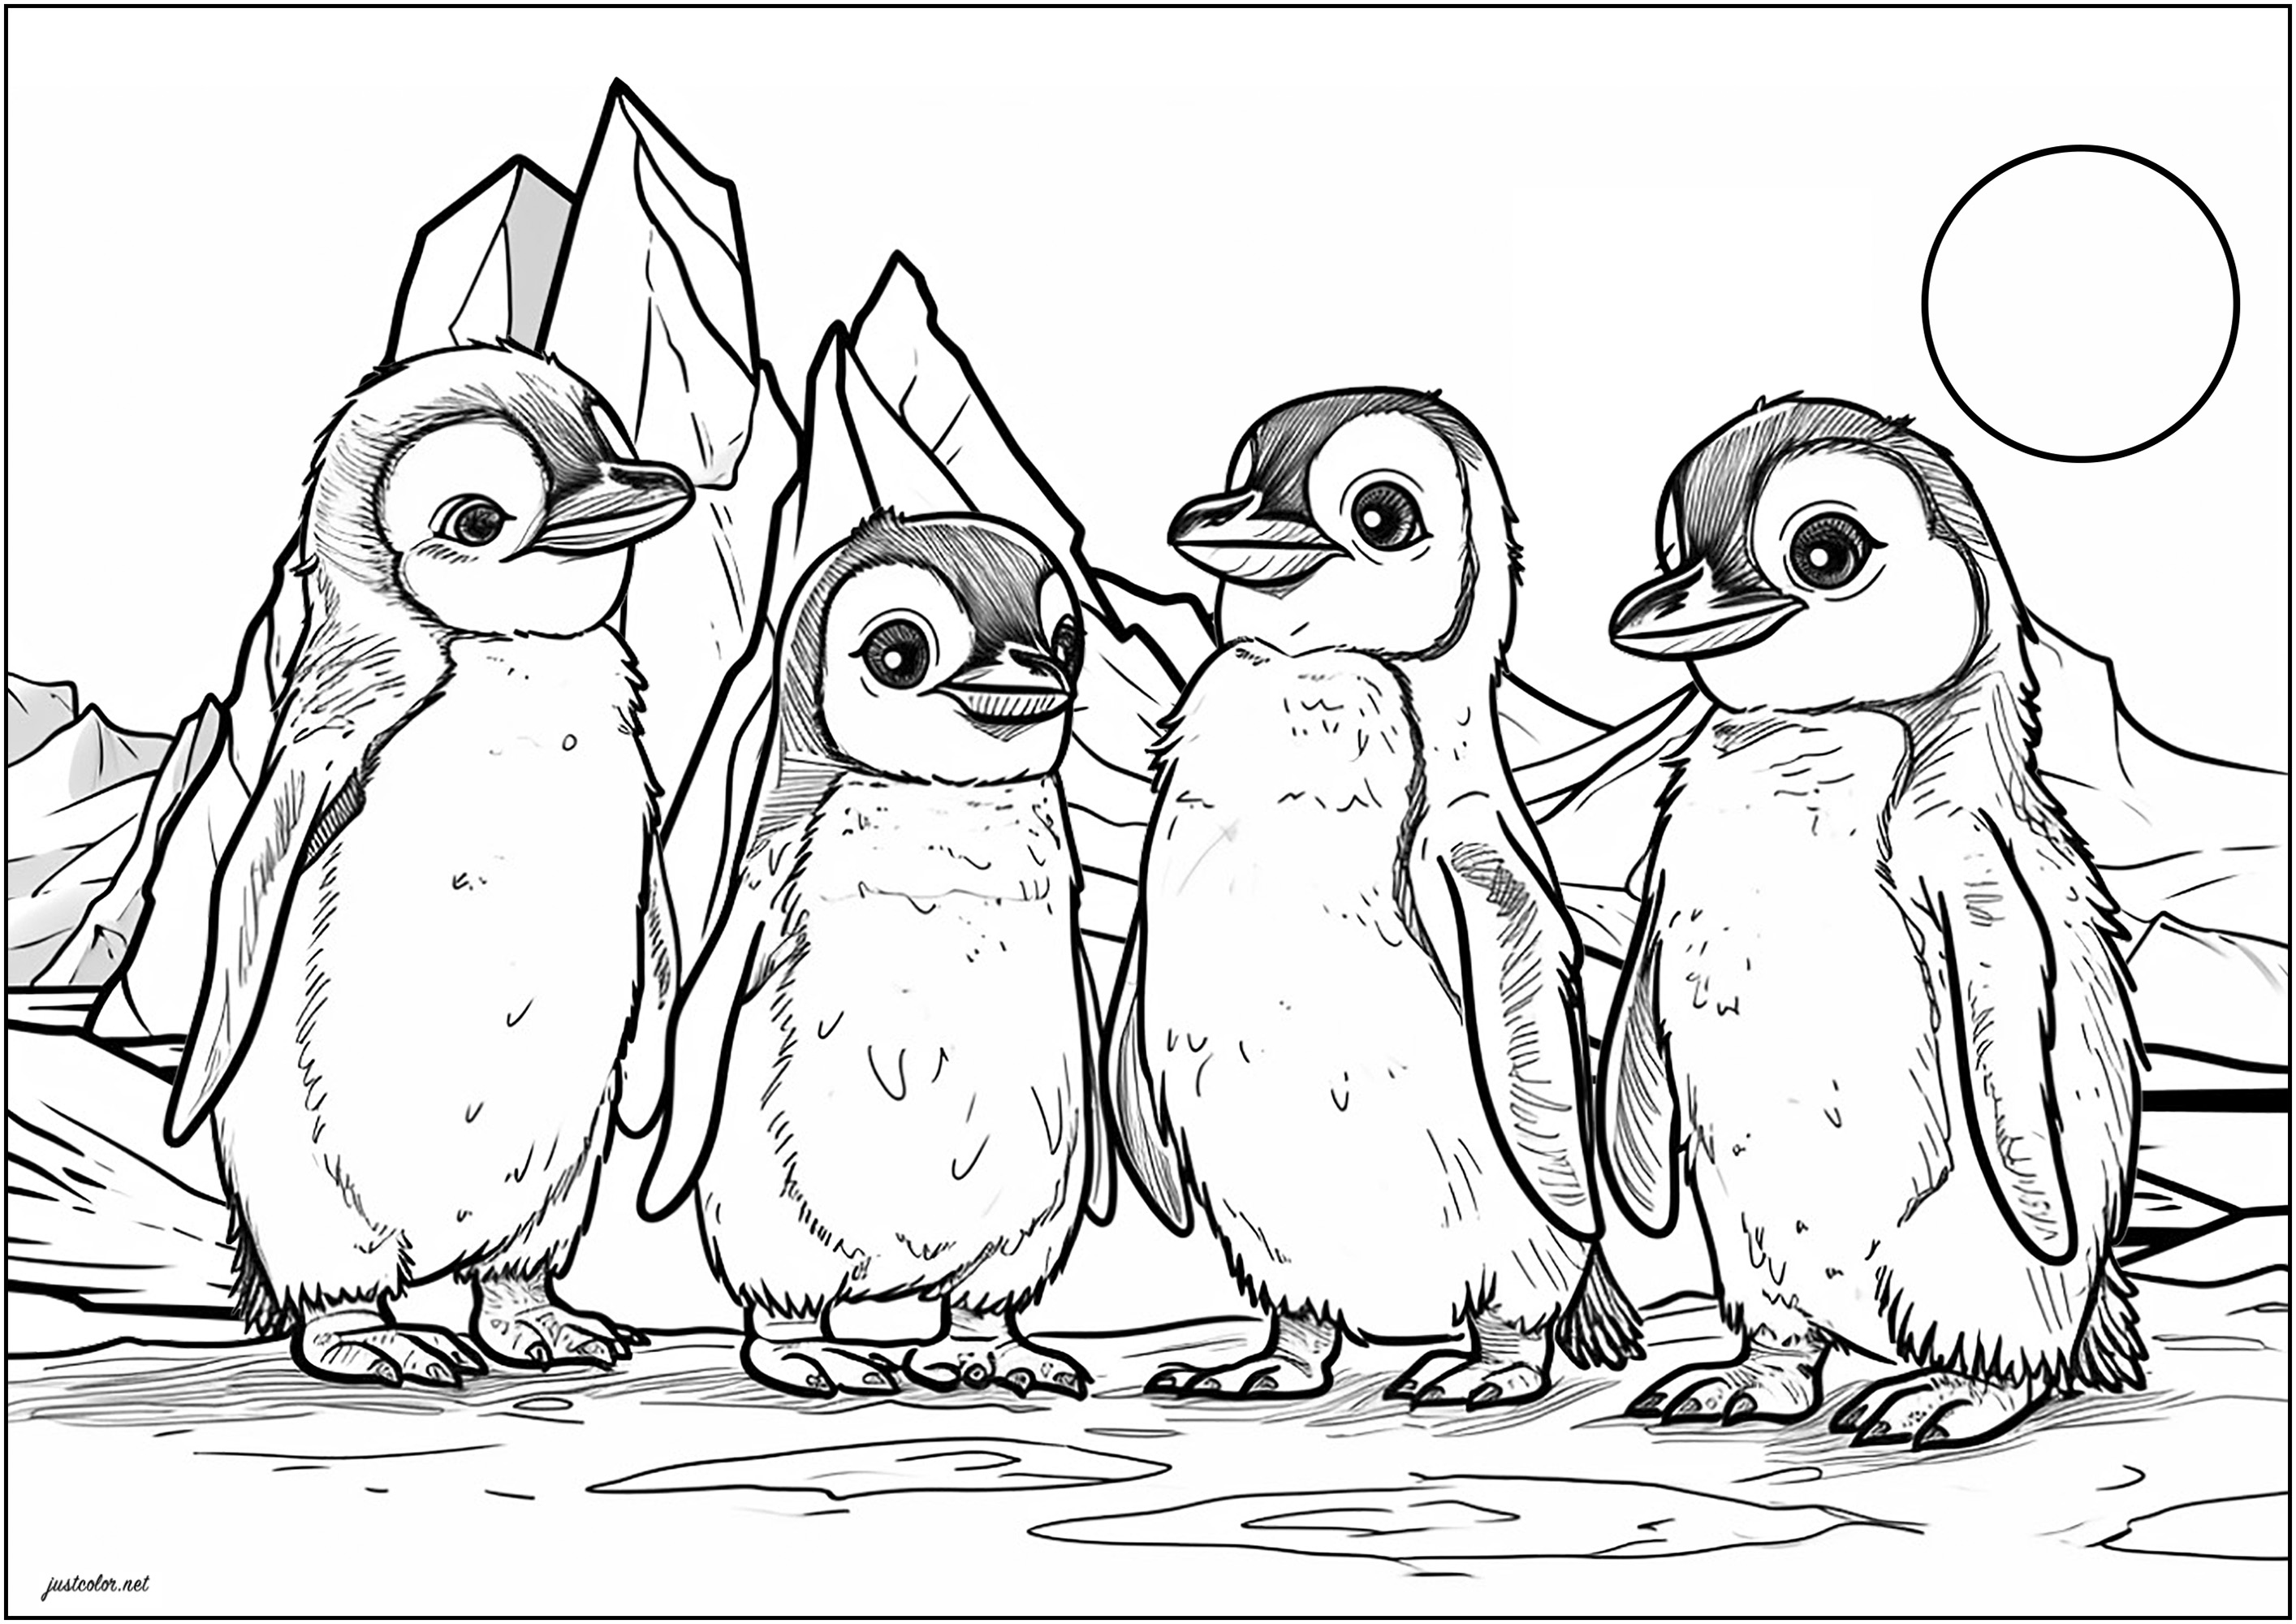 Cuatro pequeños pingüinos en la banquisa